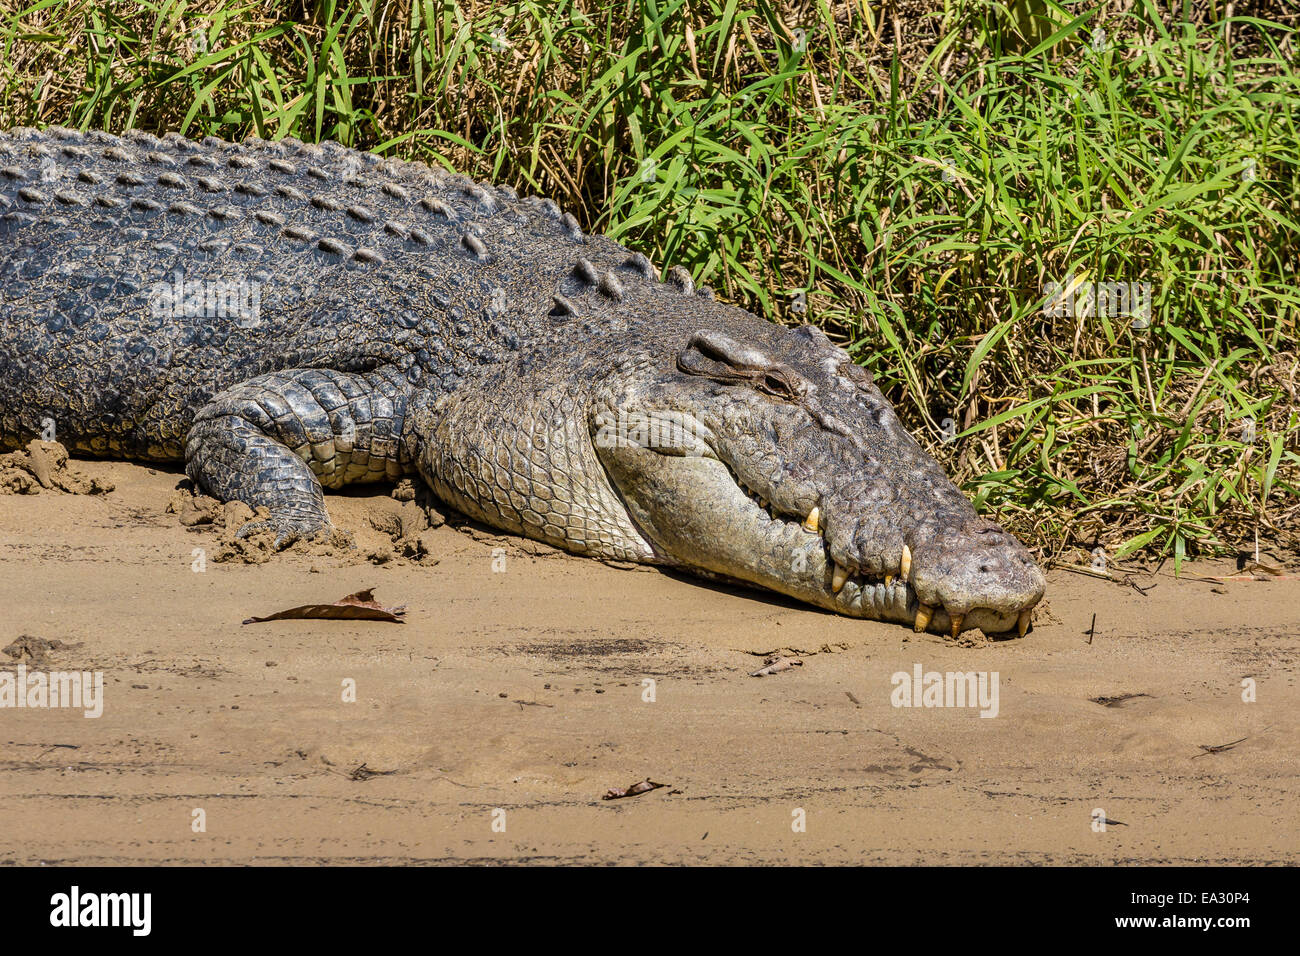 Des profils saltwater crocodile (Crocodylus porosus), sur les rives de la rivière Daintree, la forêt tropicale de Daintree, Queensland, Australie Banque D'Images